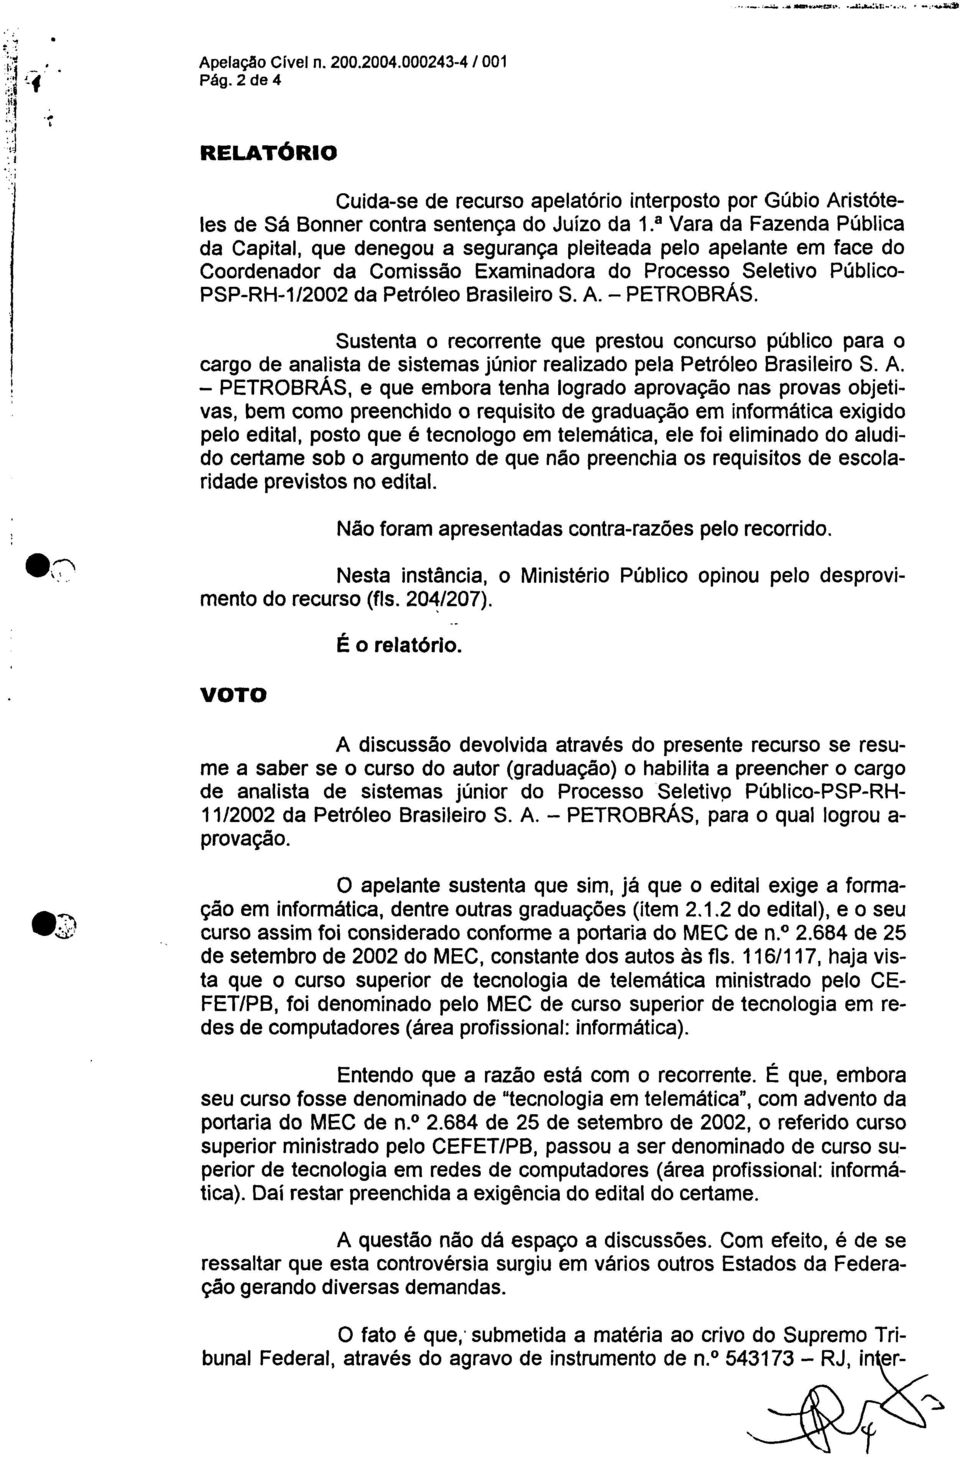 pelo apelante em face do Coordenador da Comissão Examinadora do Processo Seletivo Público- PSP-RH-1/2002 da Petróleo Brasileiro S. A. PETROBRÁS.